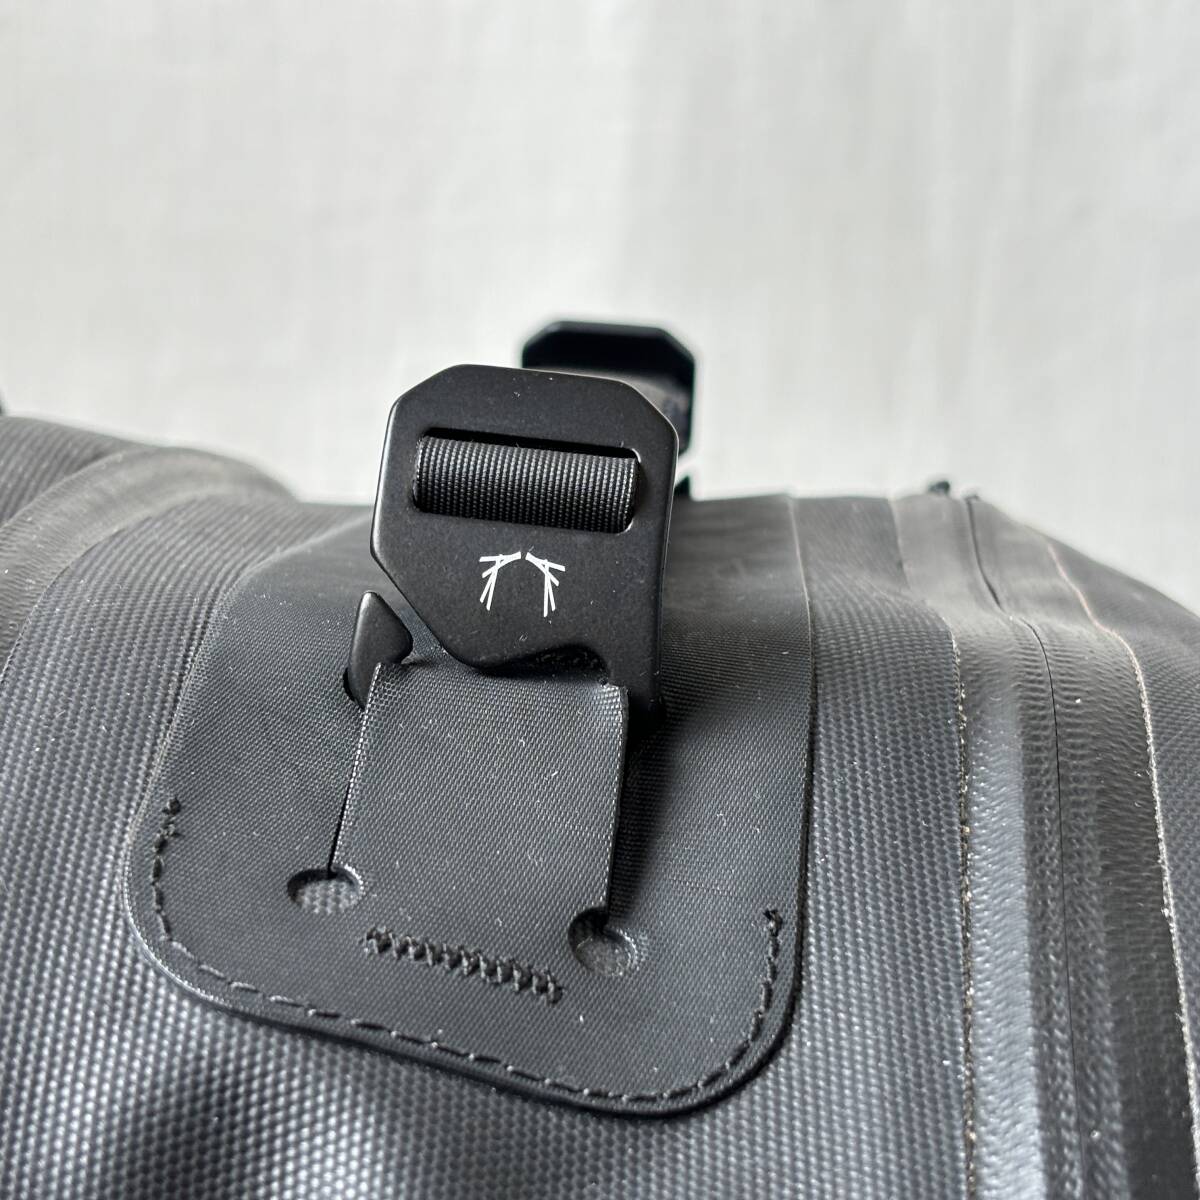 #1 jpy ~ #BLACK EMBER black Enba -CITADEL R2 rucksack backpack waterproof high capacity B4/PC storage functional stylish black black 7219012